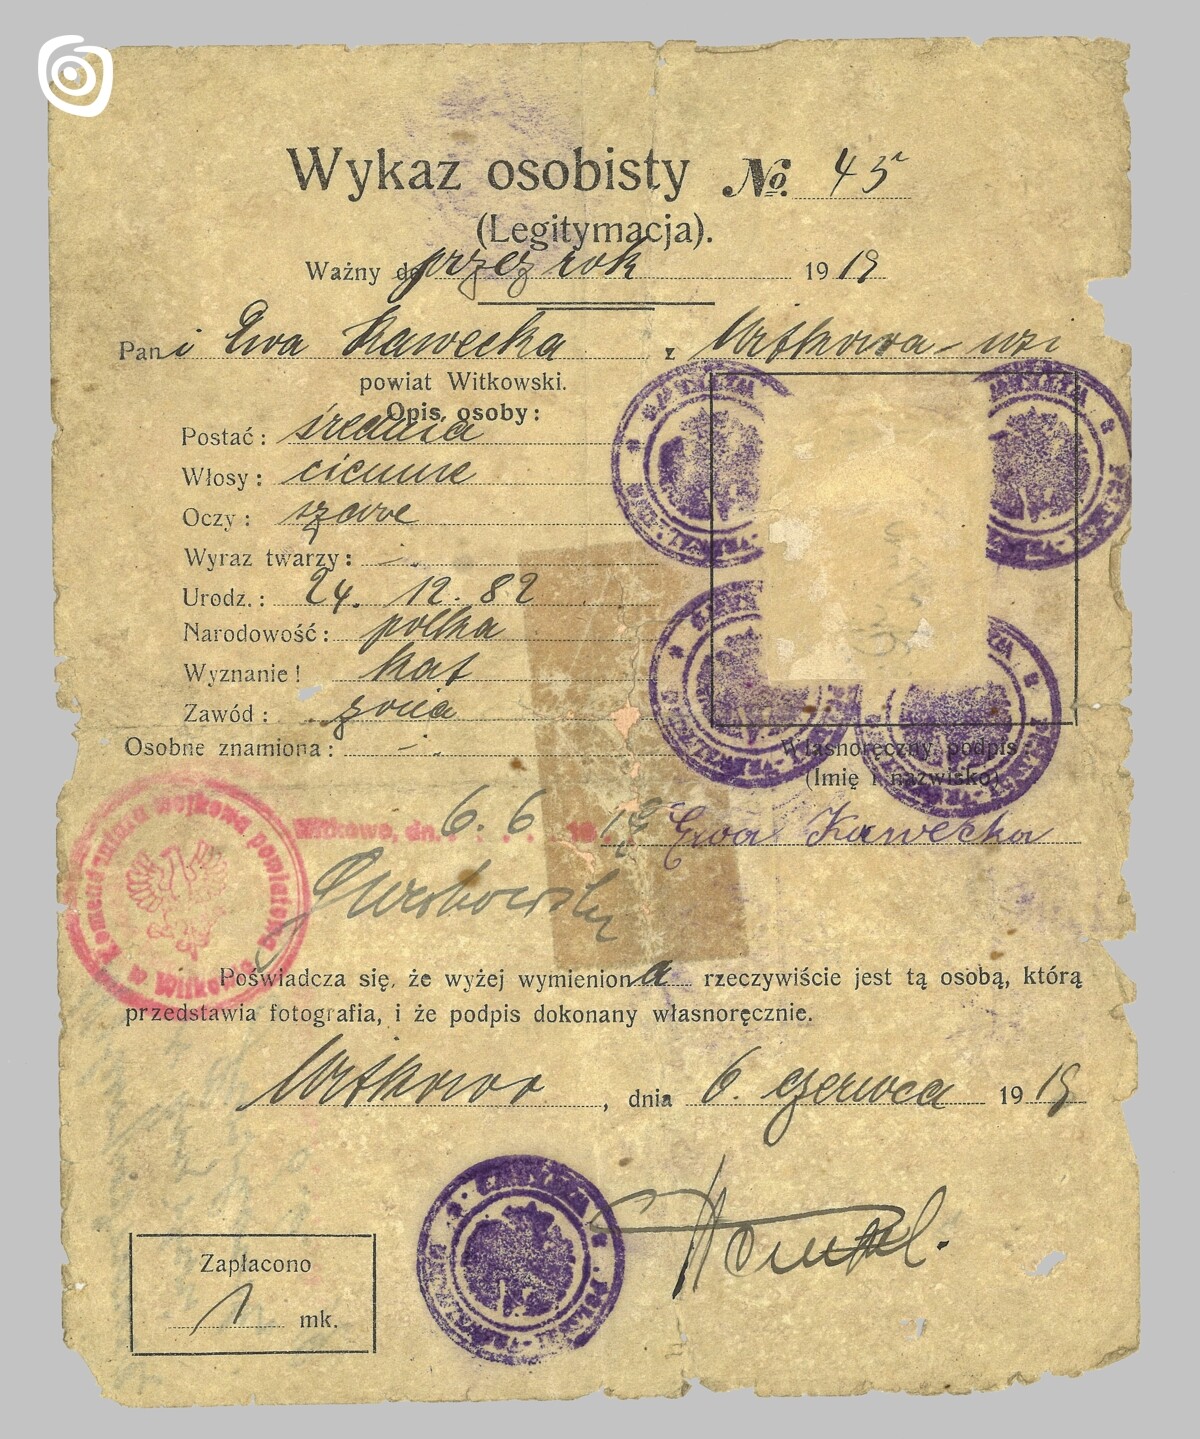 Dokument - Wykaz osobisty, Gniezno, 1919 r.